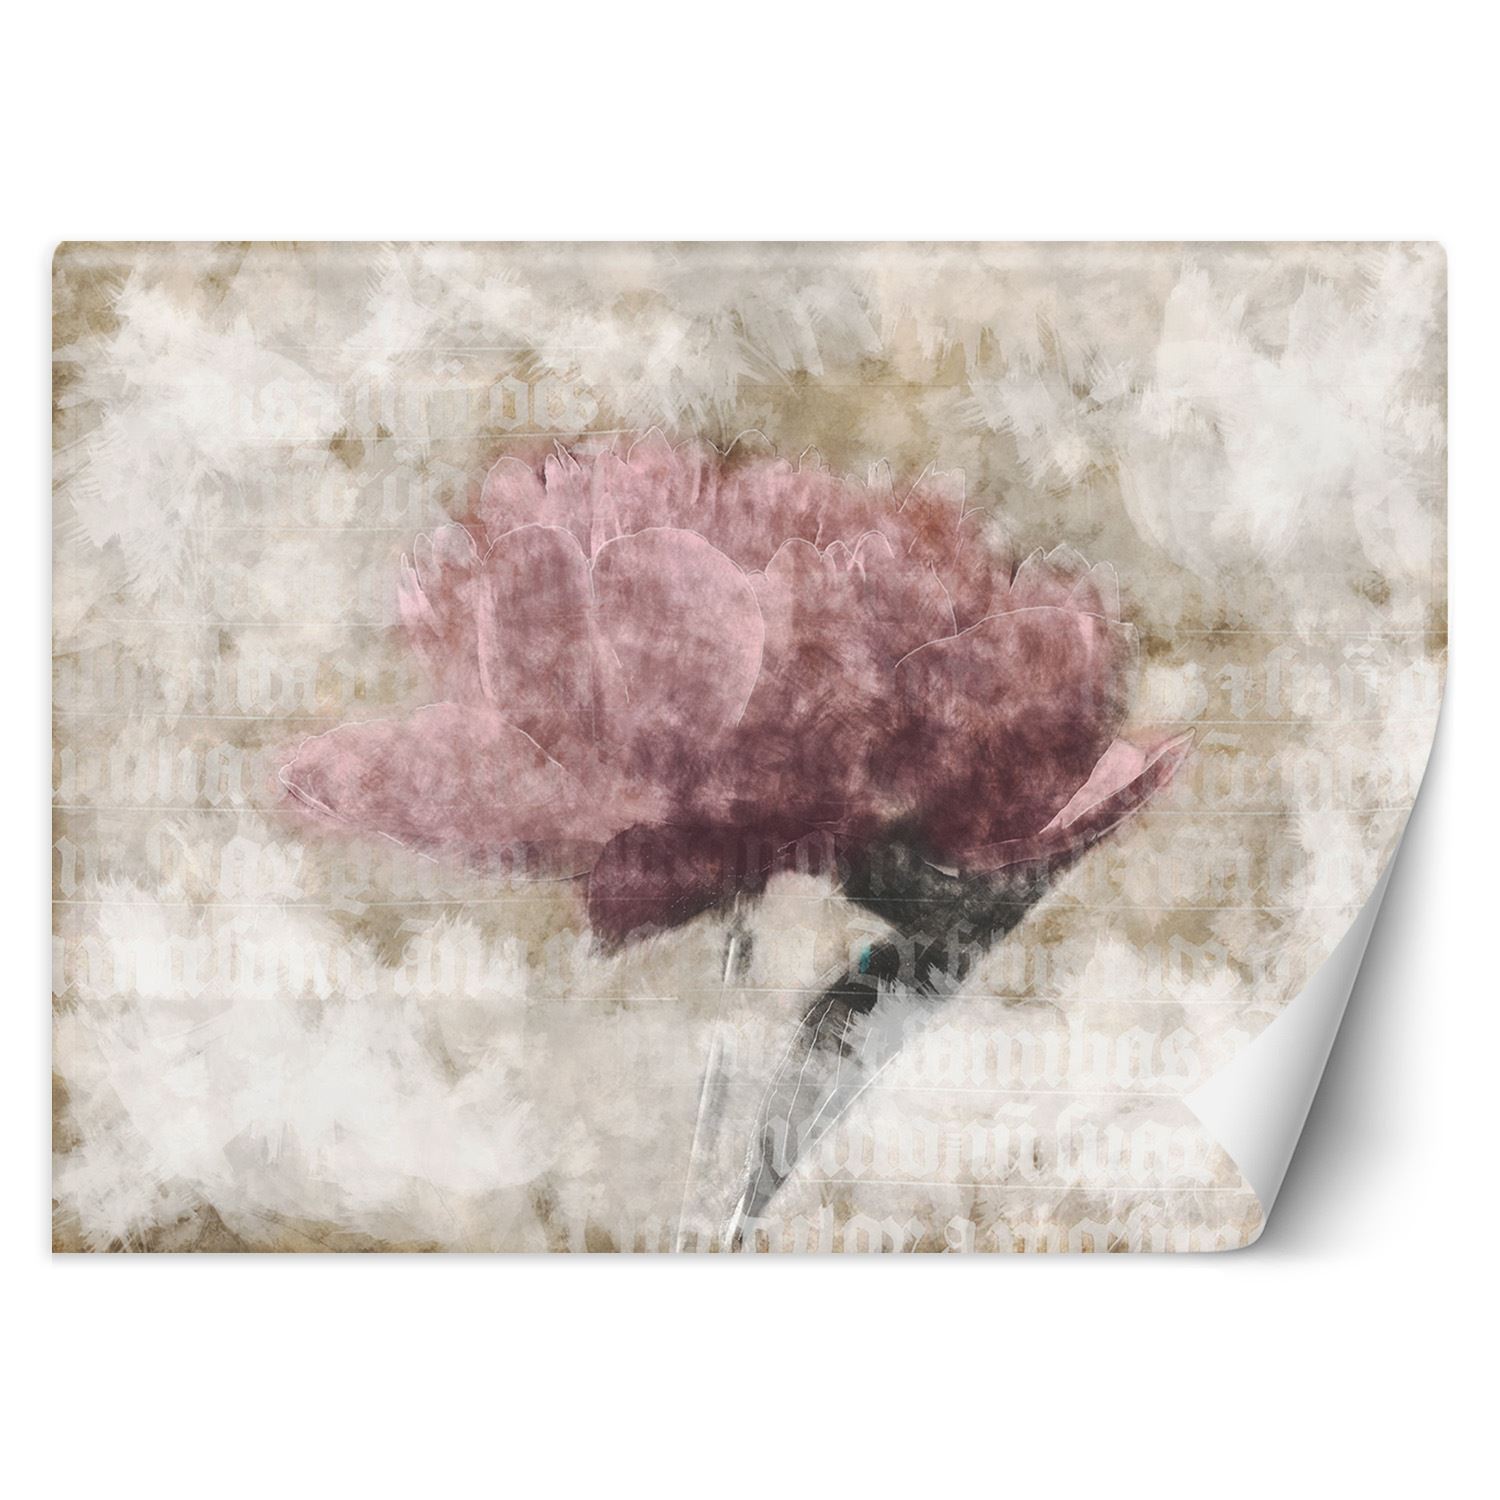 Trend24 – Behang – Abstracte Bloemen In Pastelkleuren – Behangpapier – Fotobehang 3D – Behang Woonkamer – 400x280x2 cm – Incl. behanglijm